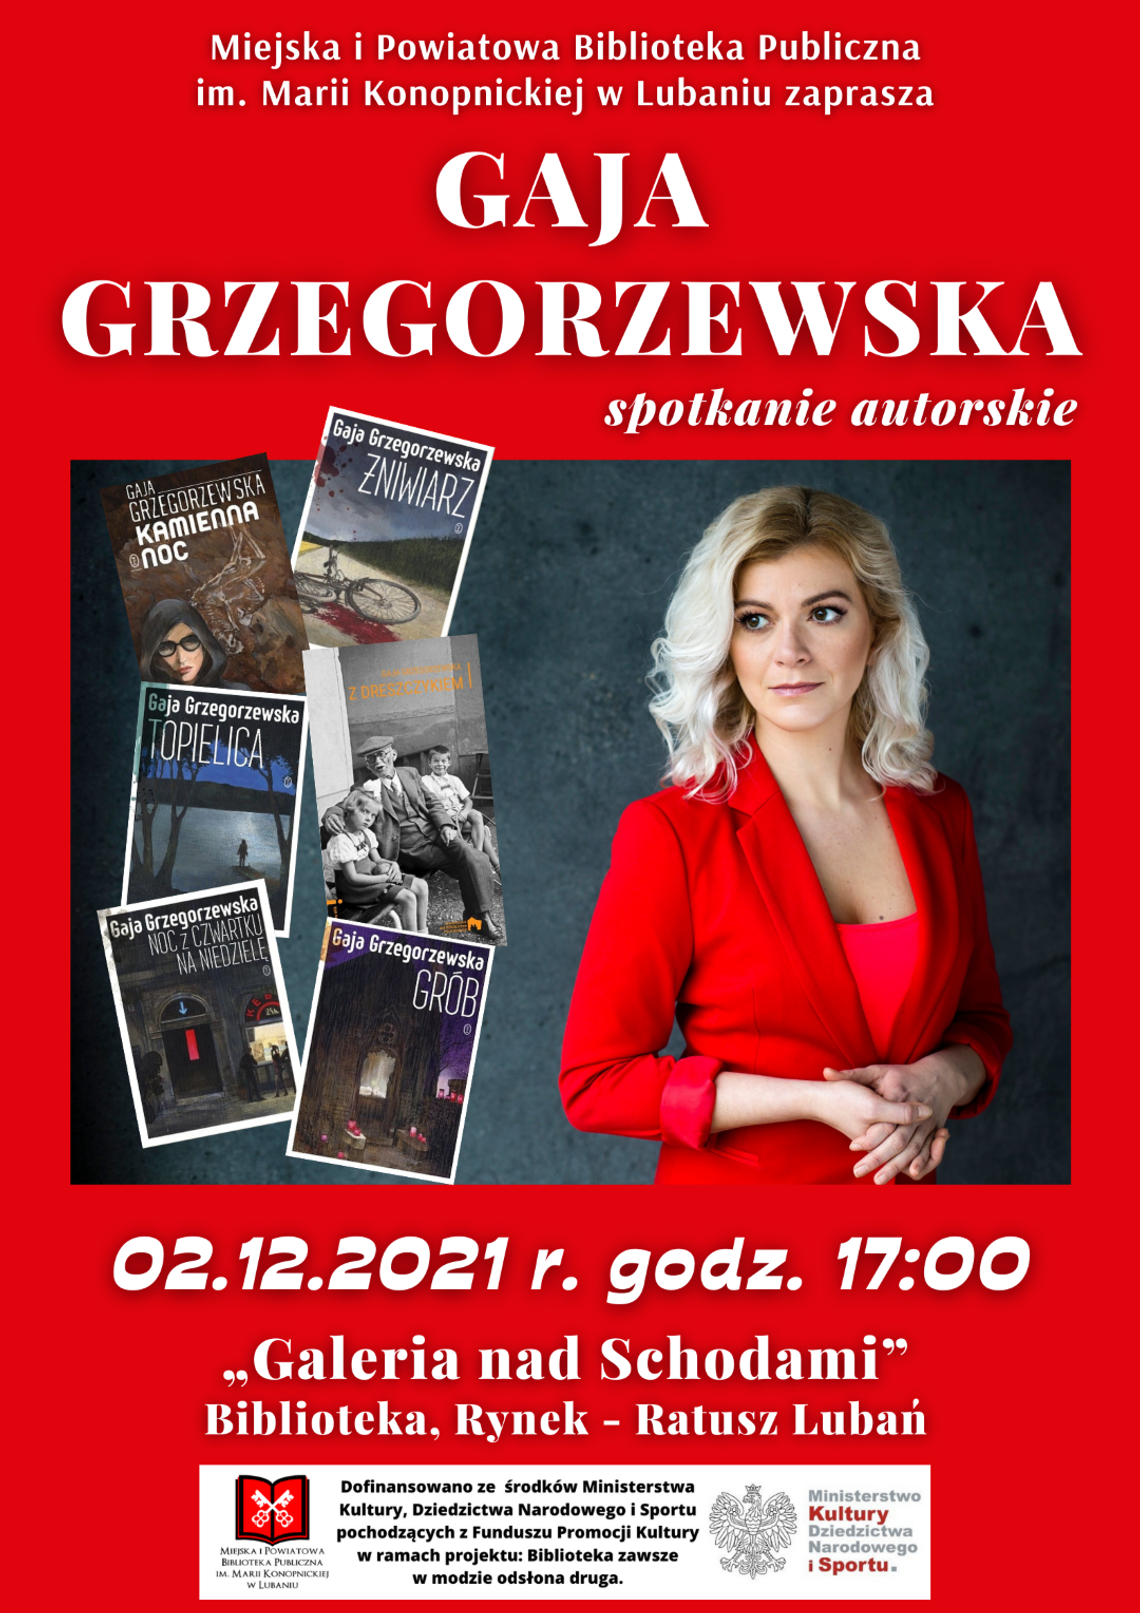 Gaja Grzegorzewska - spotkanie autorskie